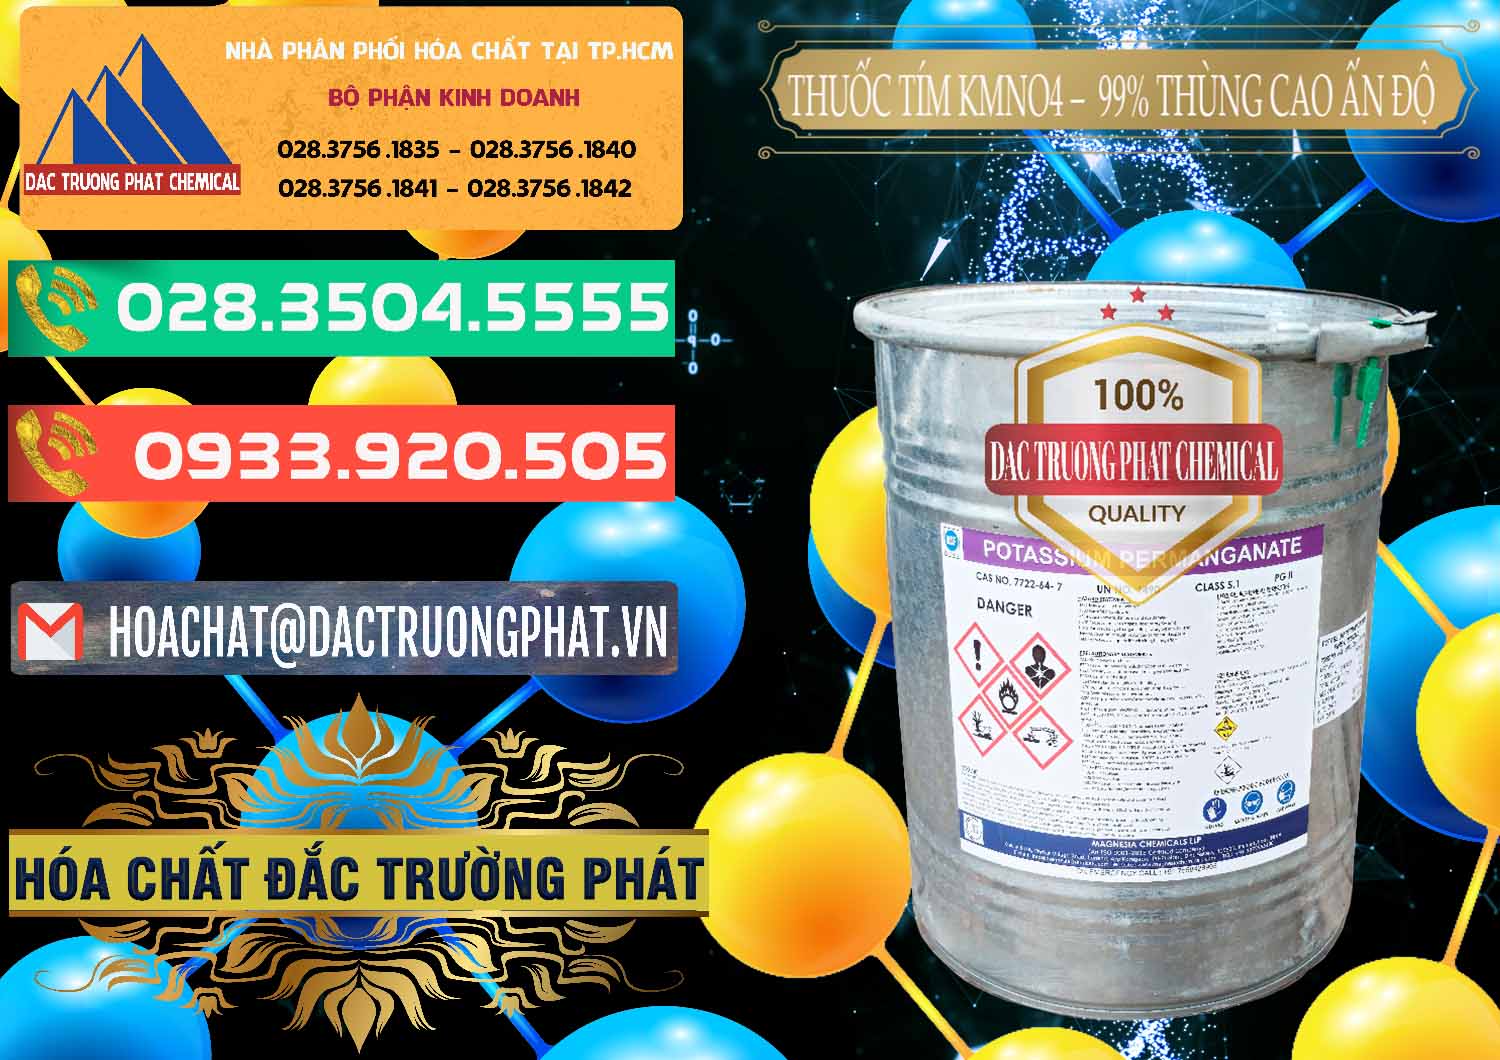 Cty chuyên bán - cung cấp Thuốc Tím - KMNO4 Thùng Cao 99% Magnesia Chemicals Ấn Độ India - 0164 - Phân phối và cung cấp hóa chất tại TP.HCM - congtyhoachat.com.vn